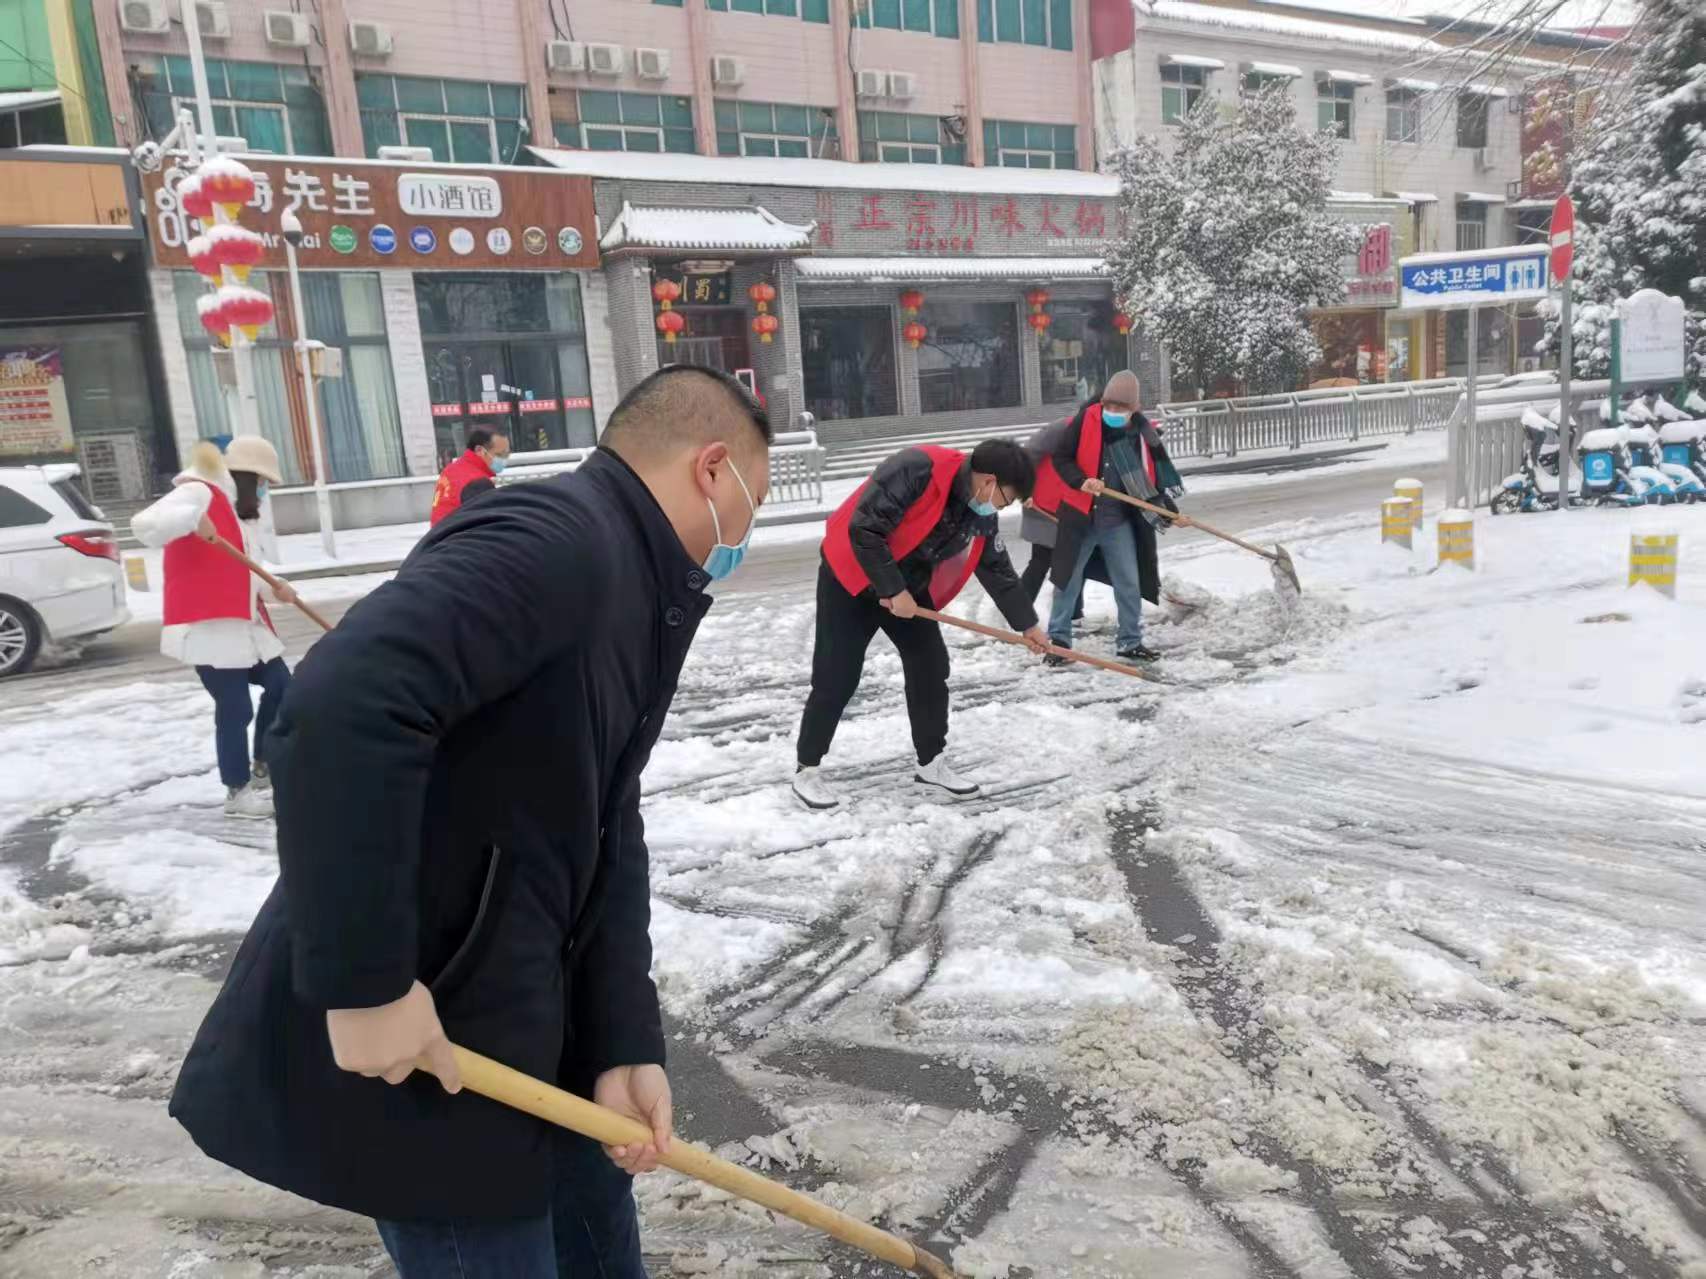 中牟縣文廣旅體局積極開展除雪志願服務活動